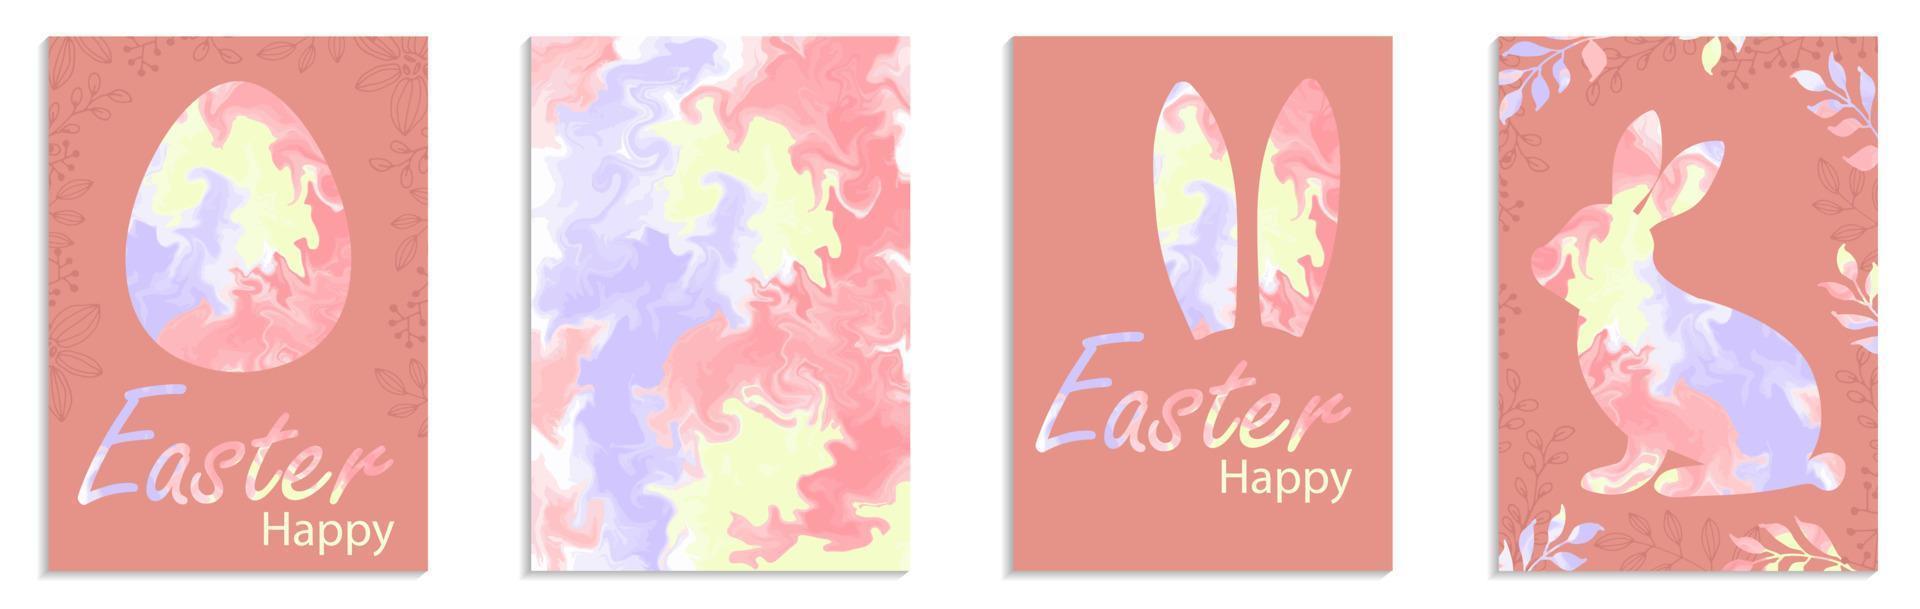 Felices Pascuas. conejo, huevo, patrón de mármol de silueta. conjunto de tarjetas para banner, tarjetas de felicitación, invitaciones. plantilla de celebración a4. ilustración vectorial vector